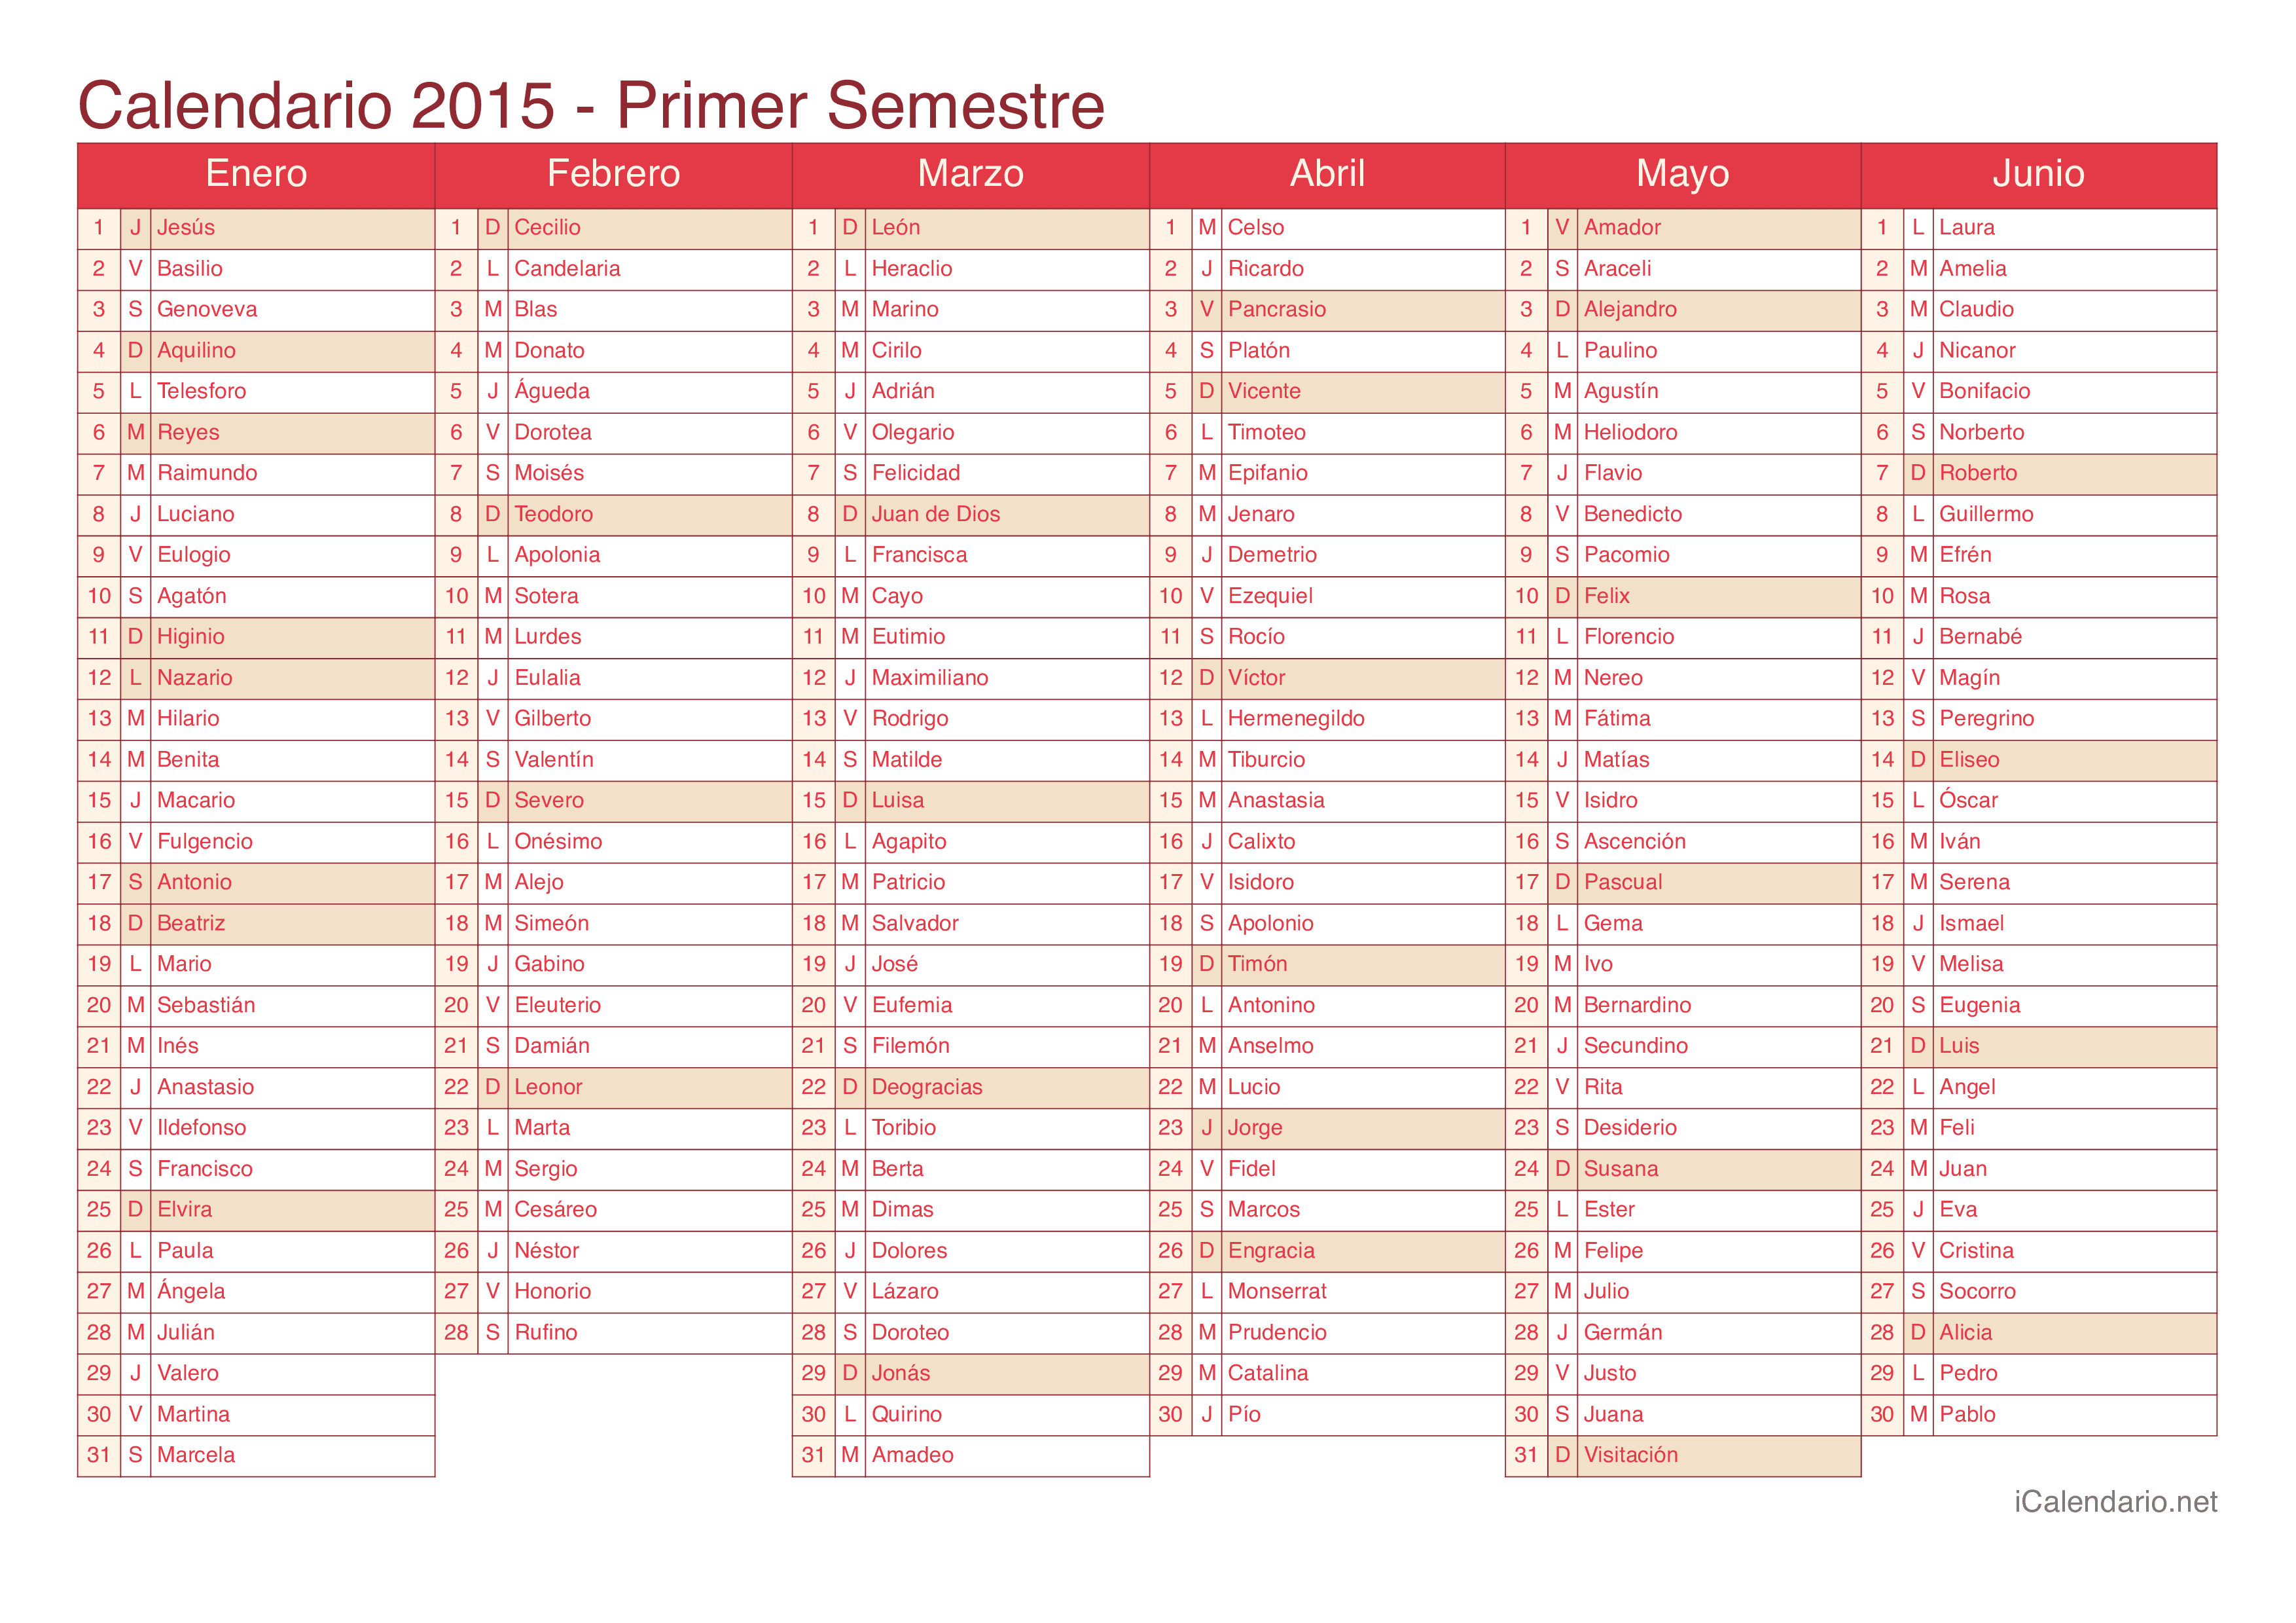 Calendario por semestre 2015 com festa do dia - Cherry